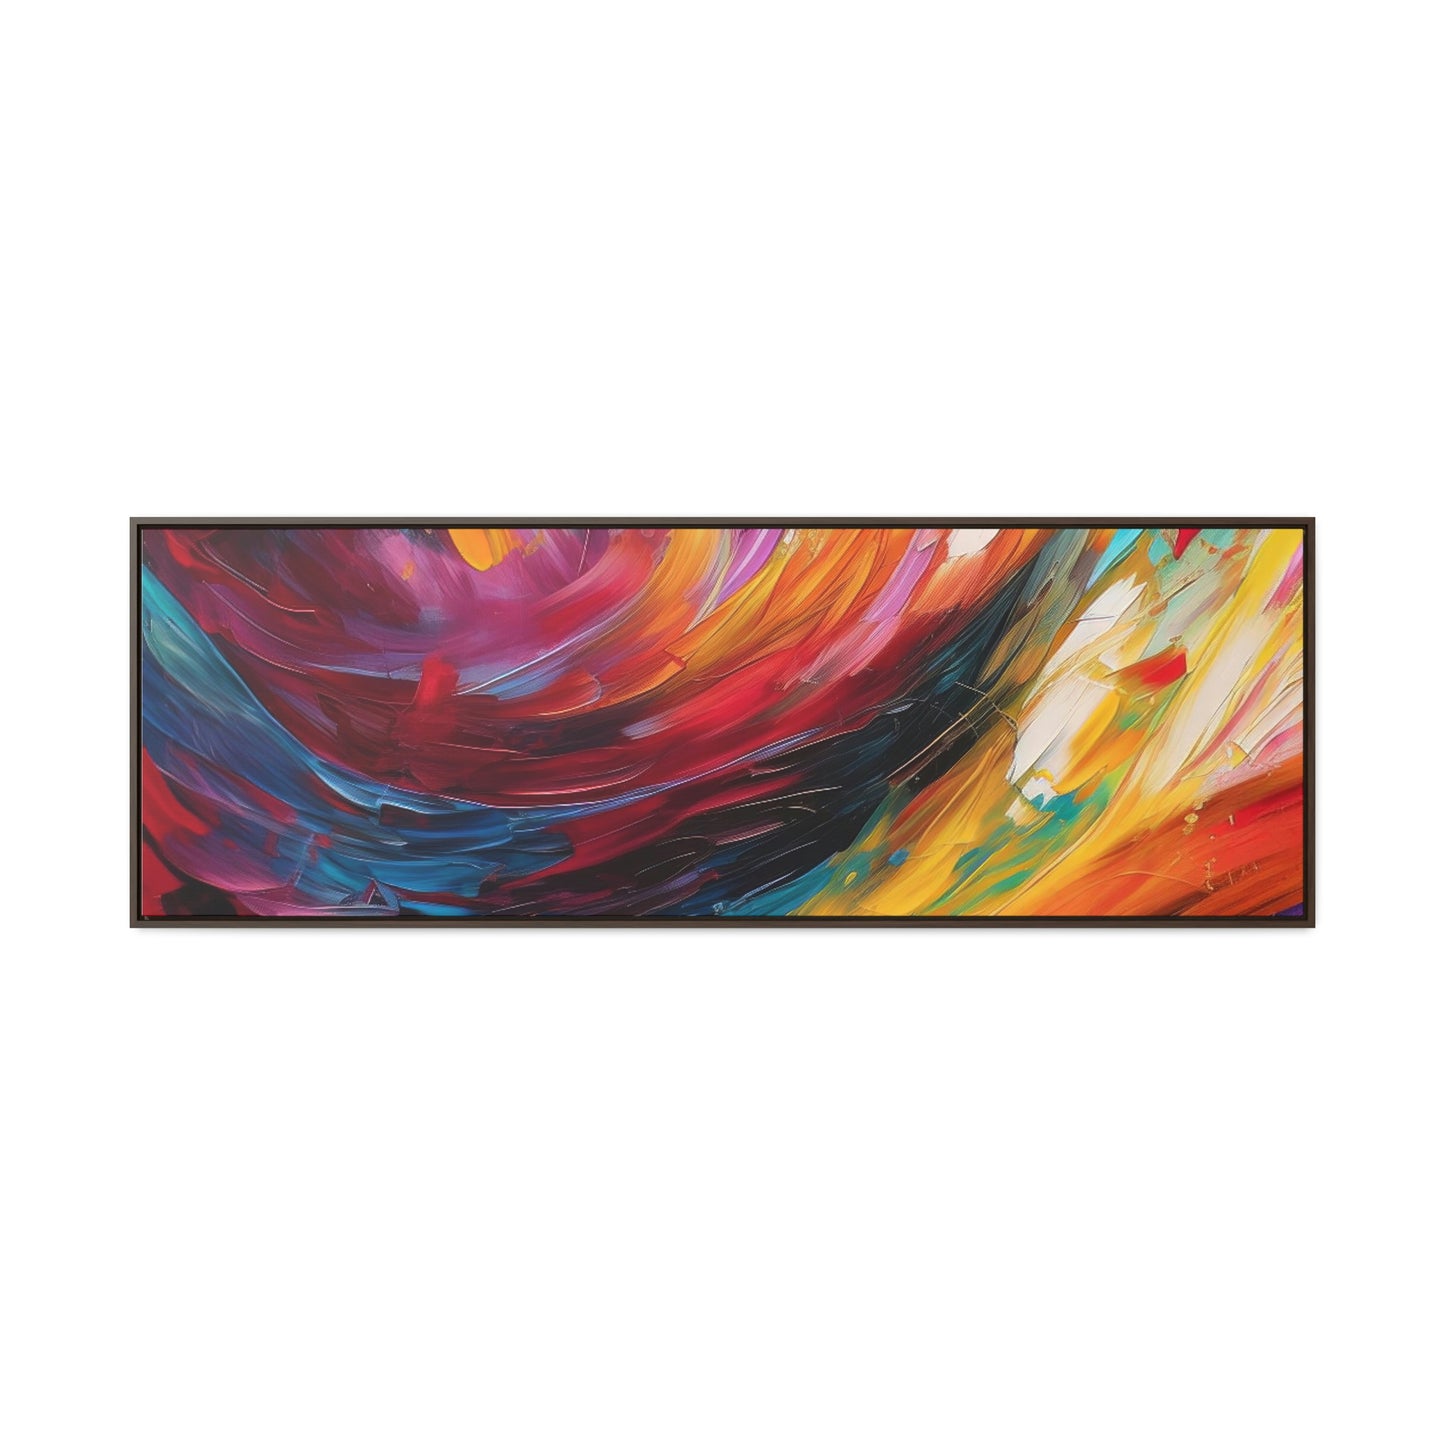 Aurora Galaxy Framed Canvas Print